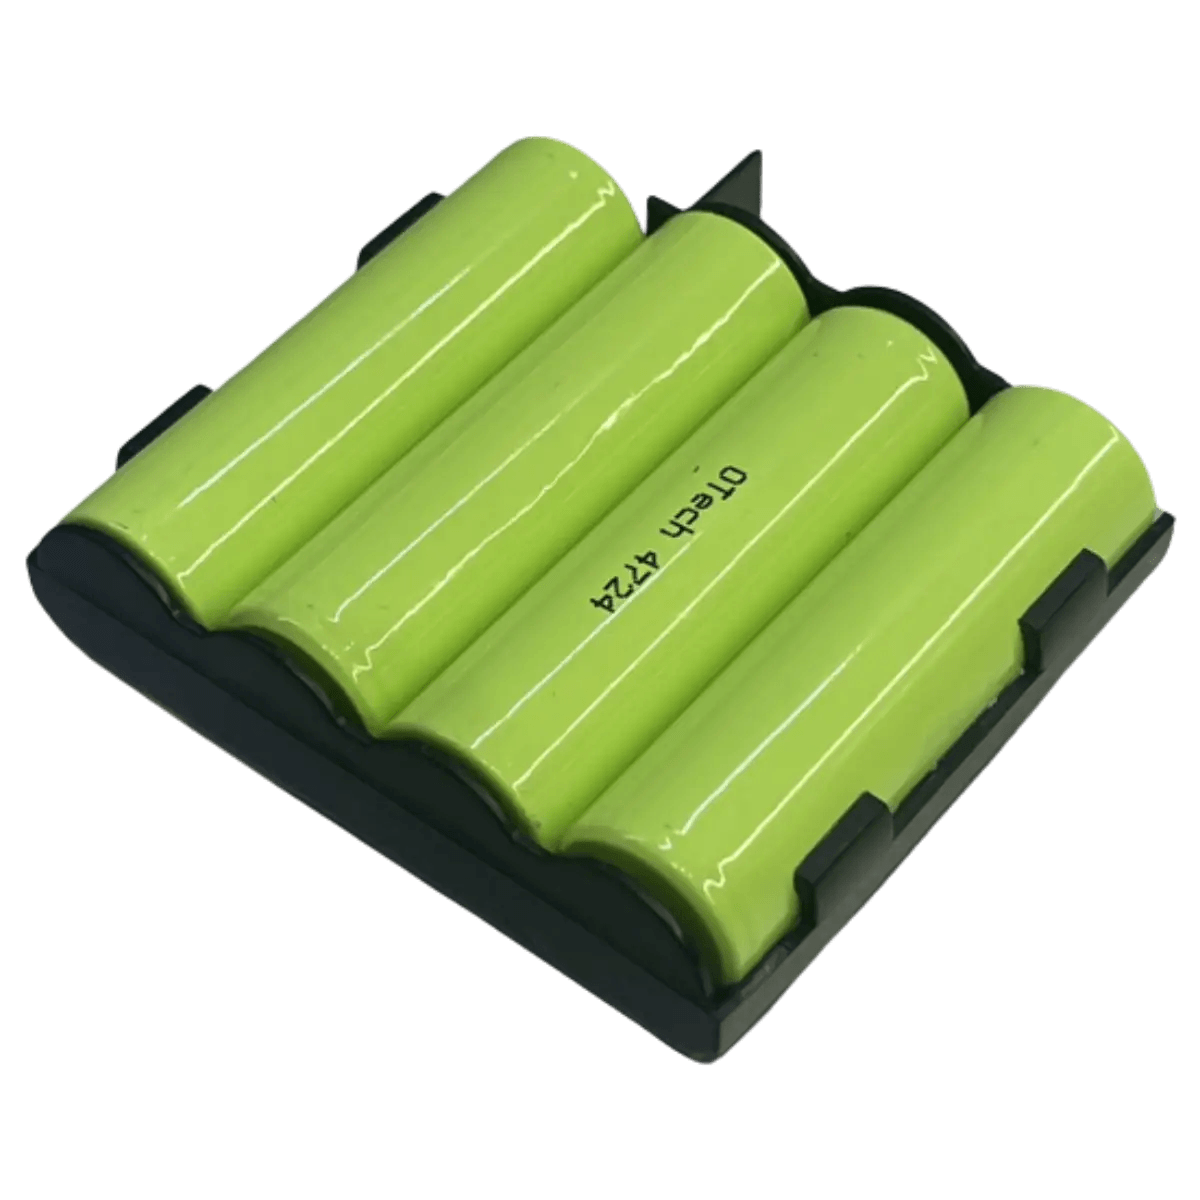 Accessoires Energie - Batterie pour Compex Nimh 4.8v